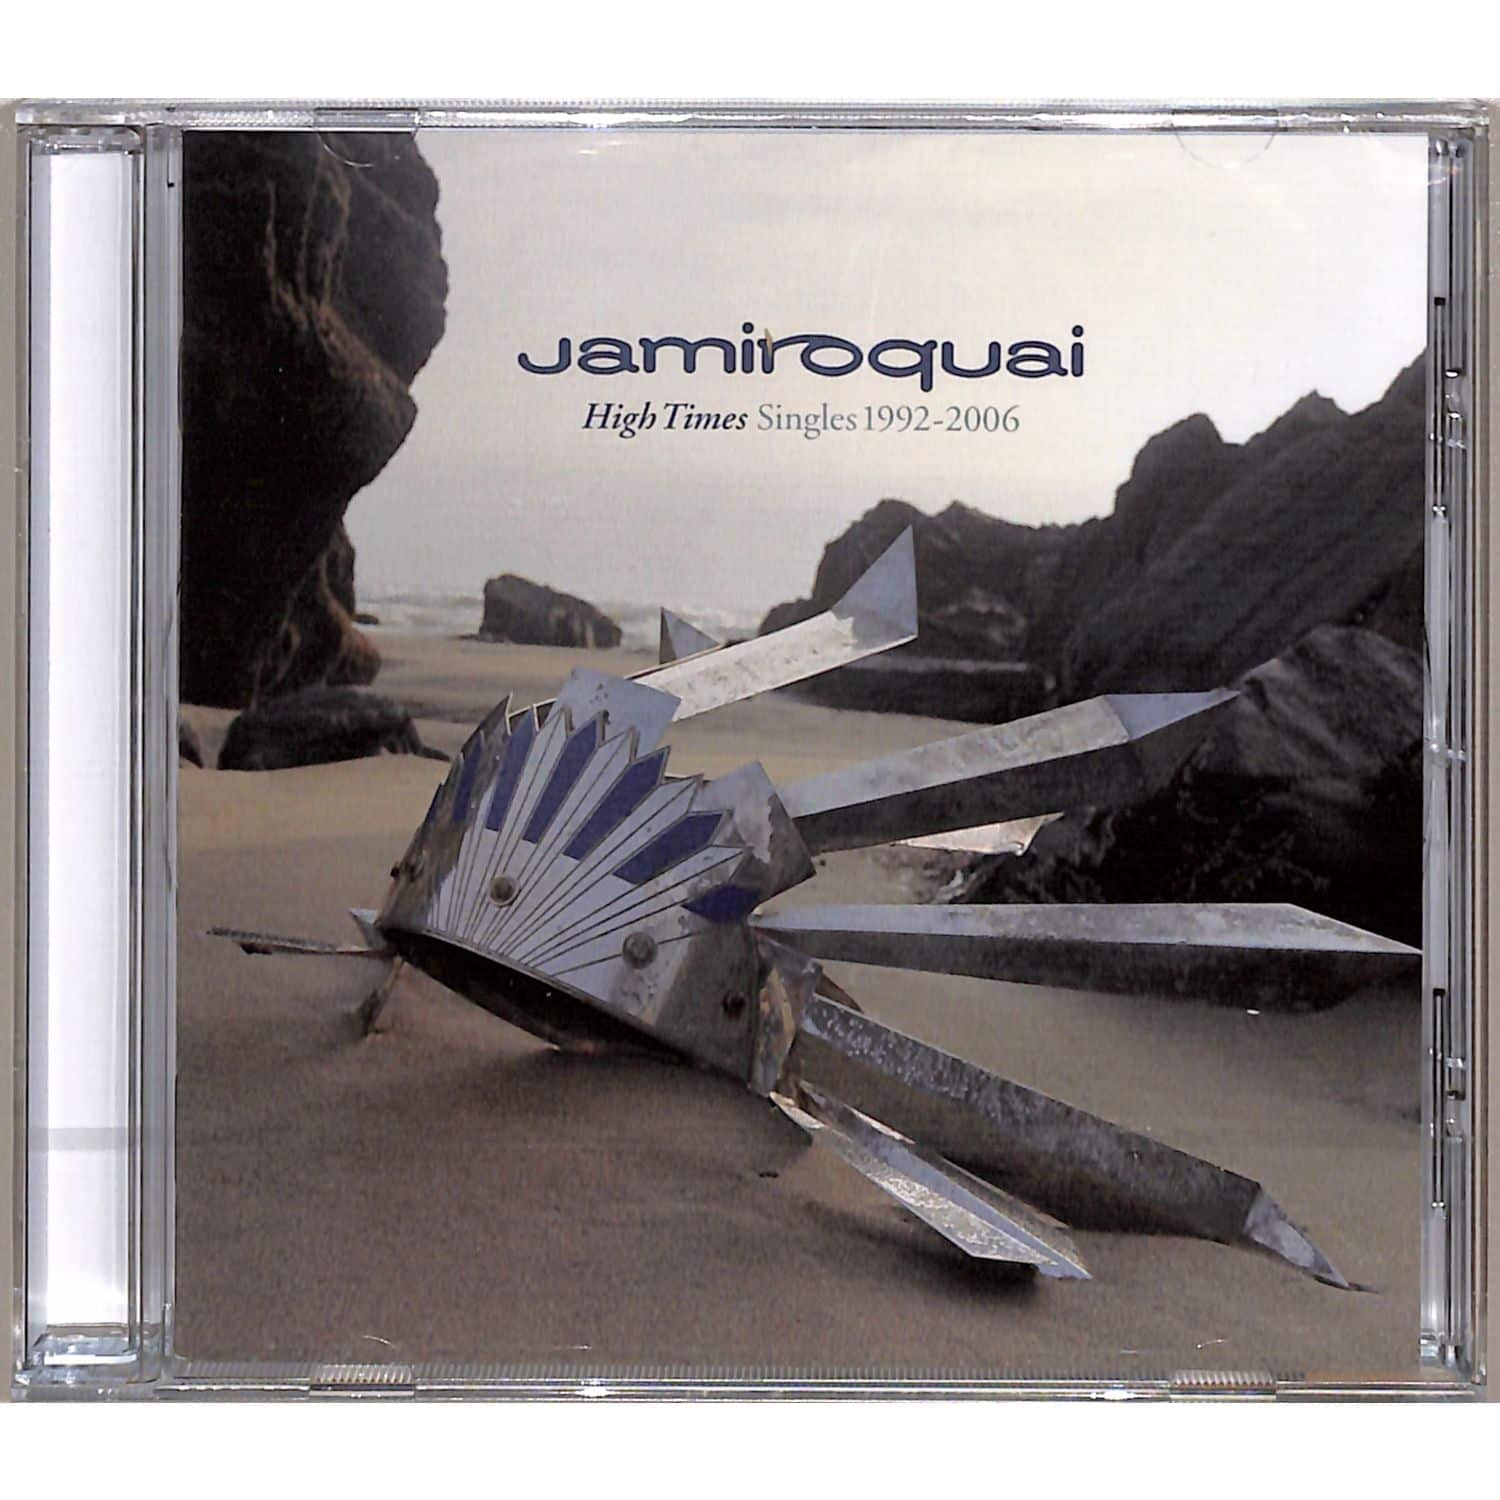 Jamiroquai - HIGH TIMES 1992-2006 